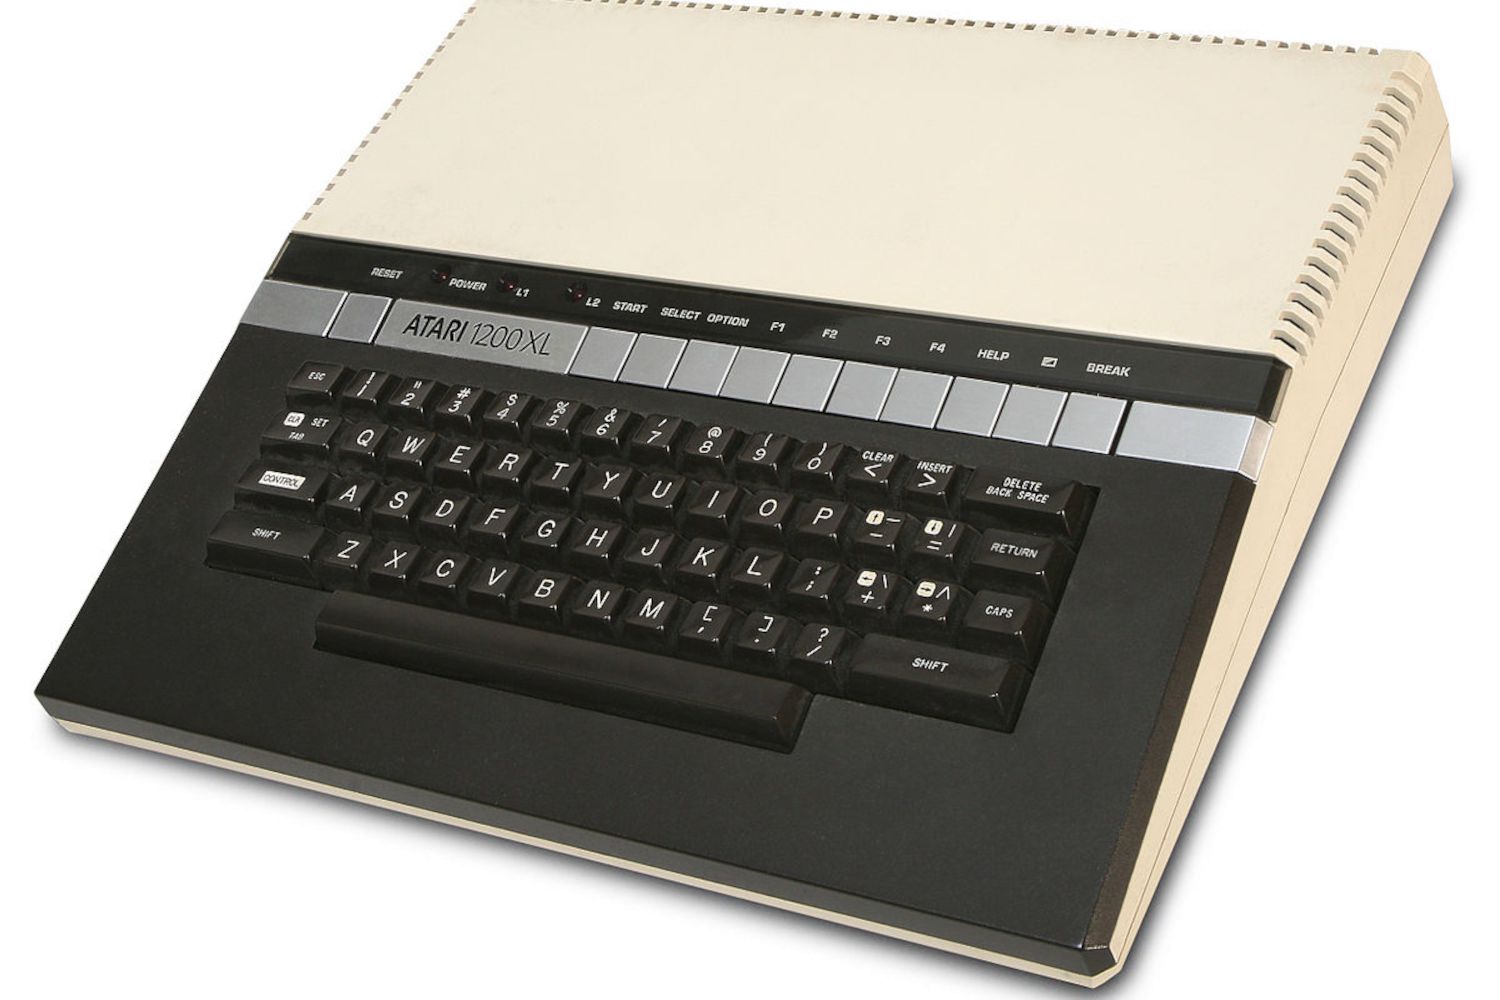 Atari 1200XL-thuiscomputer van bovenaf gezien